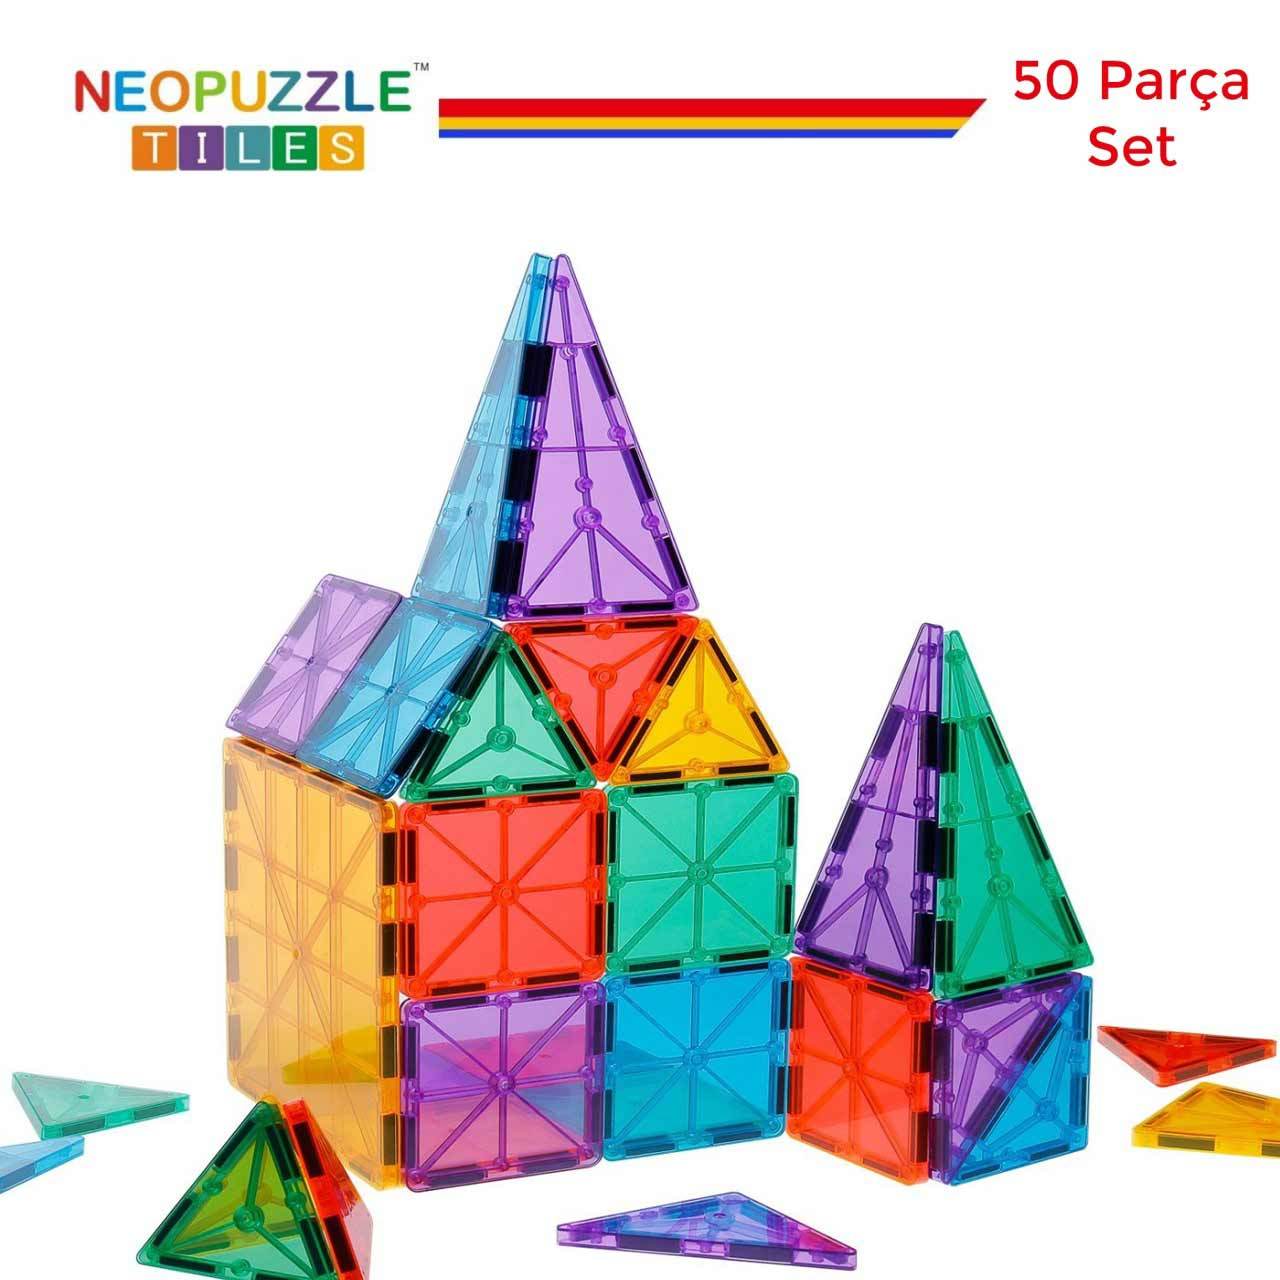 NeoPuzzle Tiles Mıknatıslı STEM Oyuncağı 50 Parça Temel Set